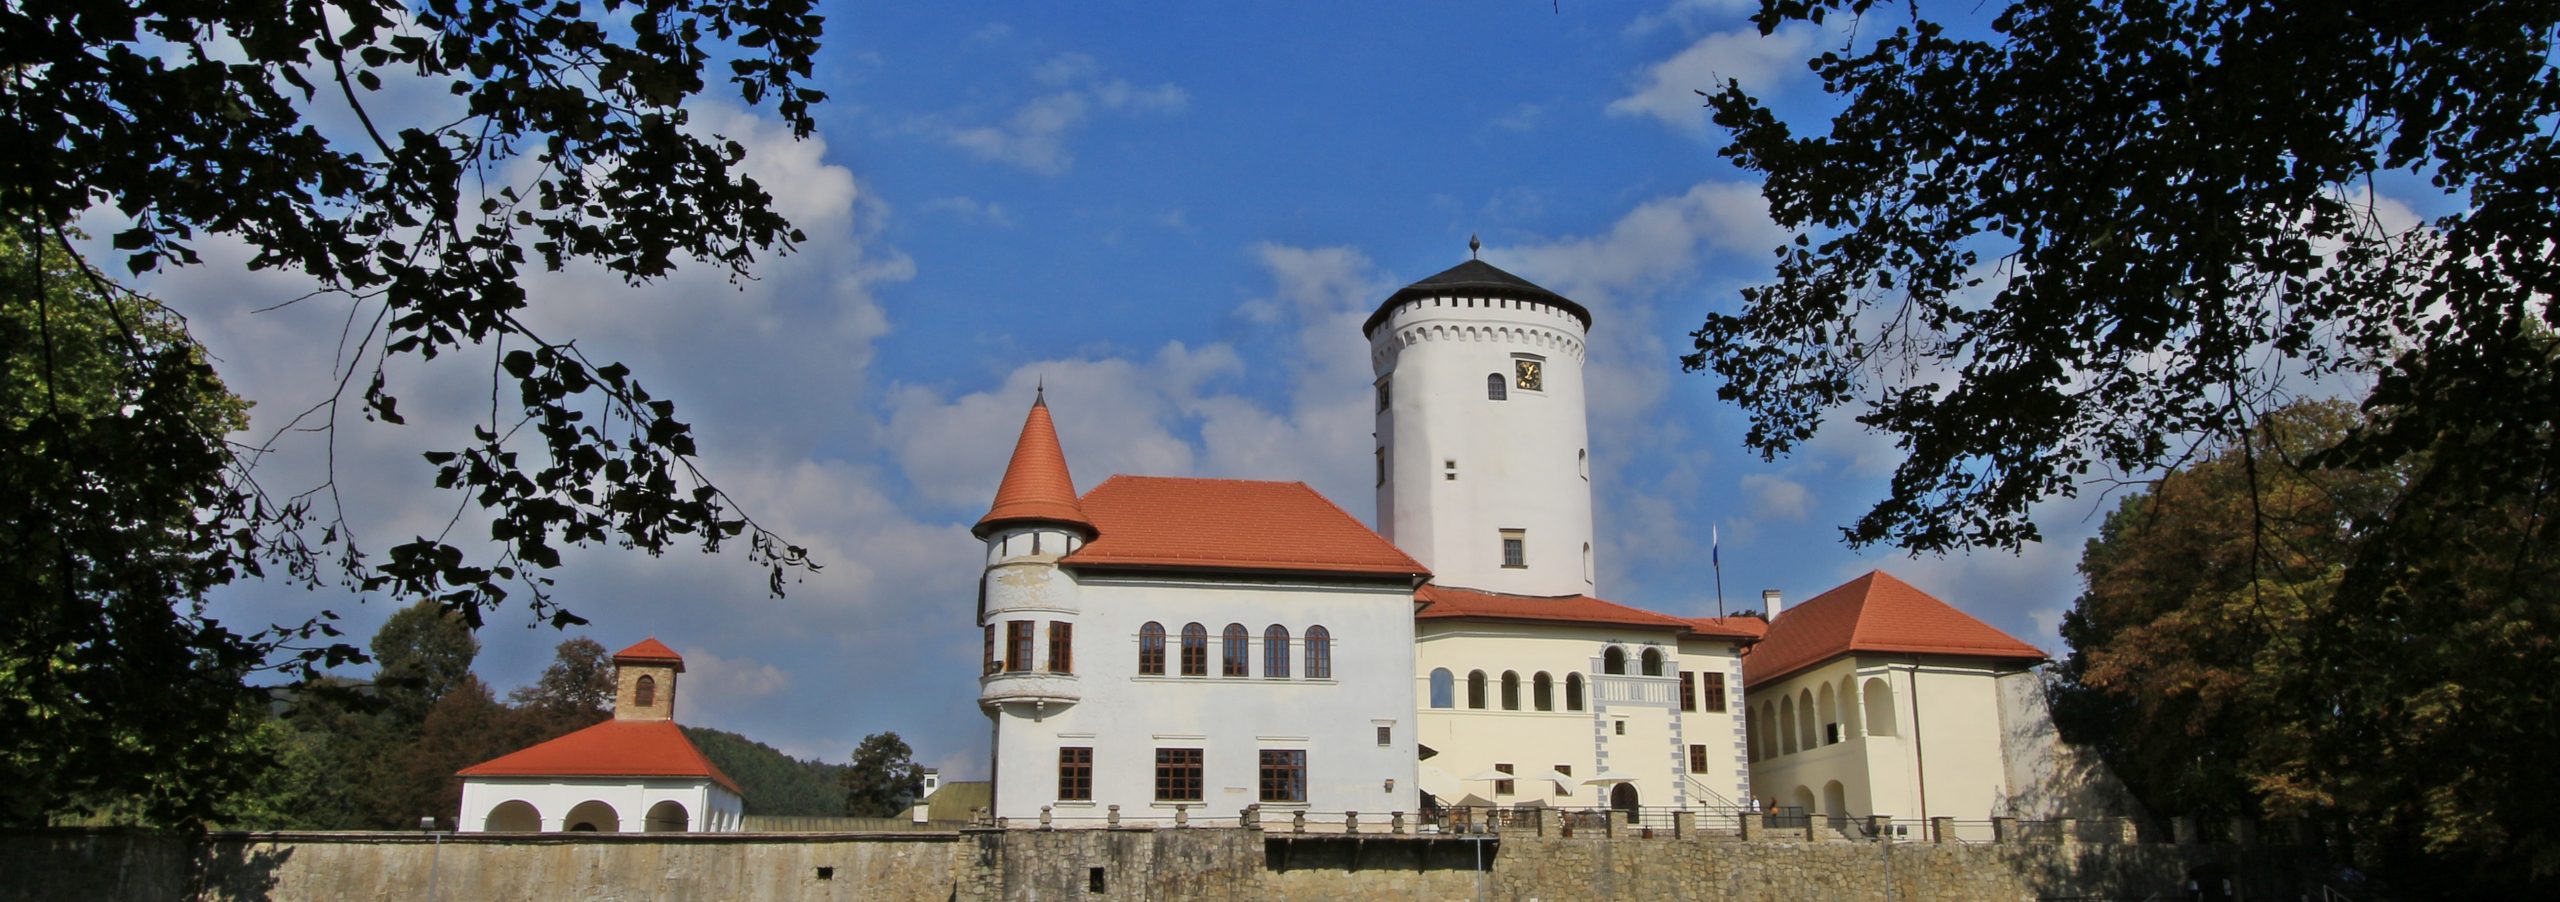 Budatínsky hrad, Žilina Zdroj: Považské múzeum